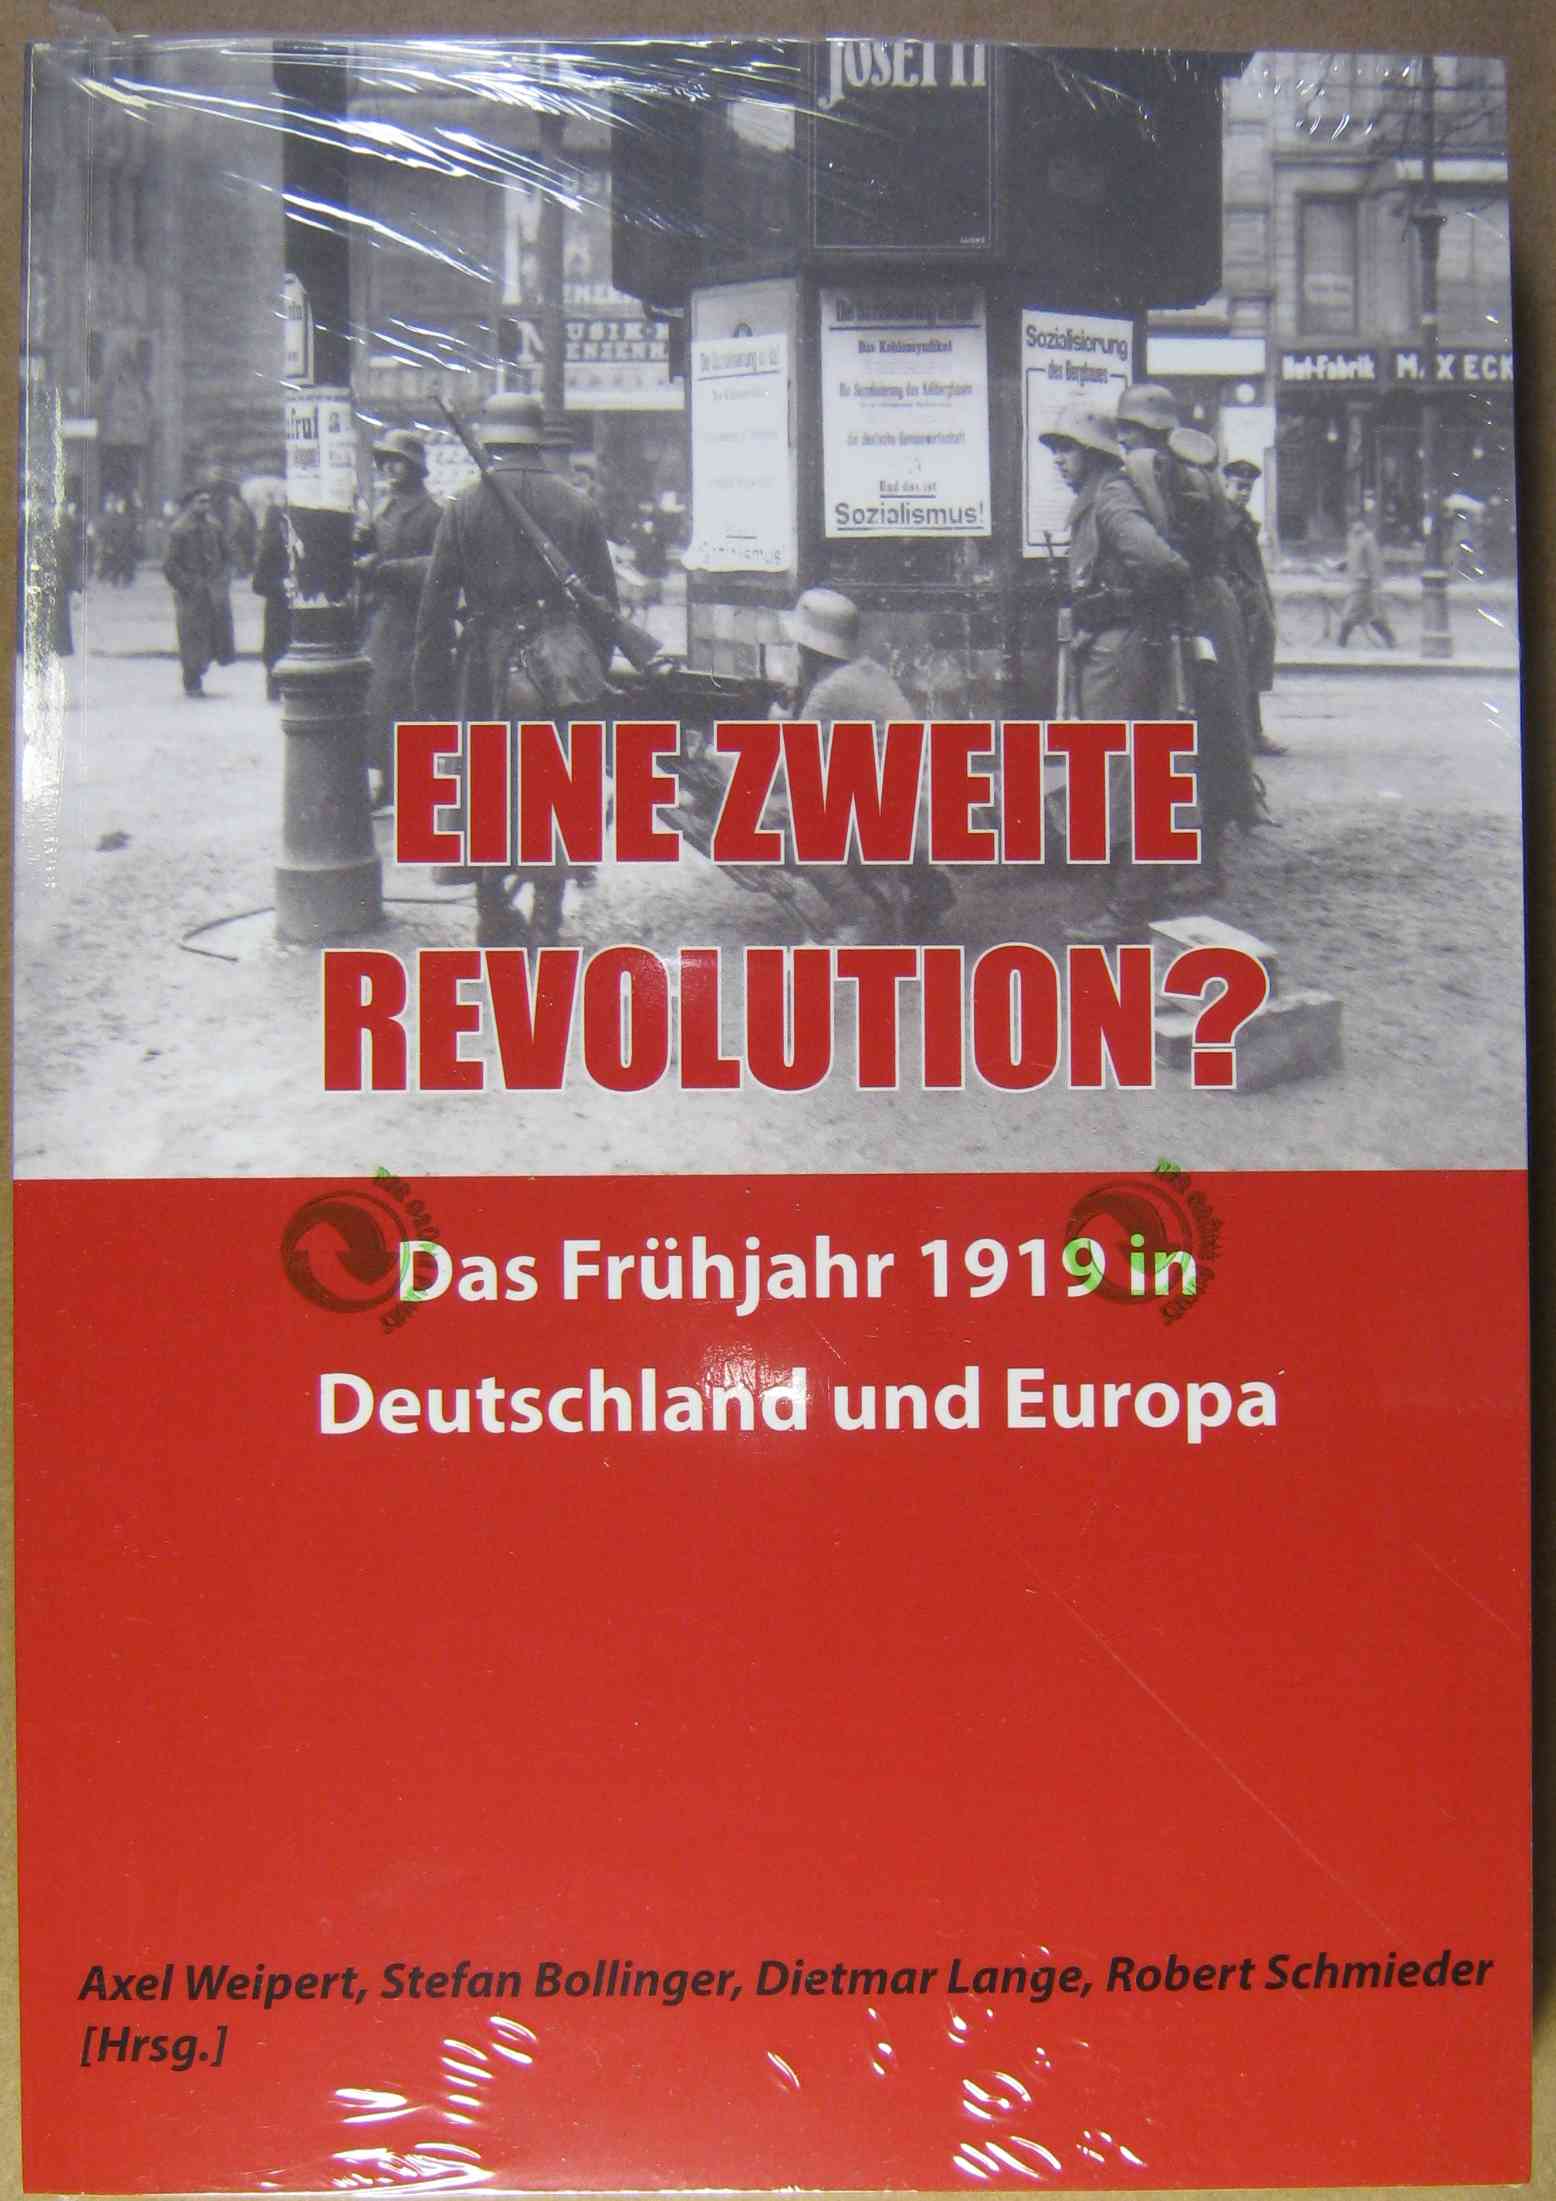 Eine zweite Revolution? - Das Frühjahr 1919 in Deutschland und Europa. - Weipert, Axel / Bollinger, Stefan / Lange, Dietmar / Schmieder, Robert (Hrsg.)